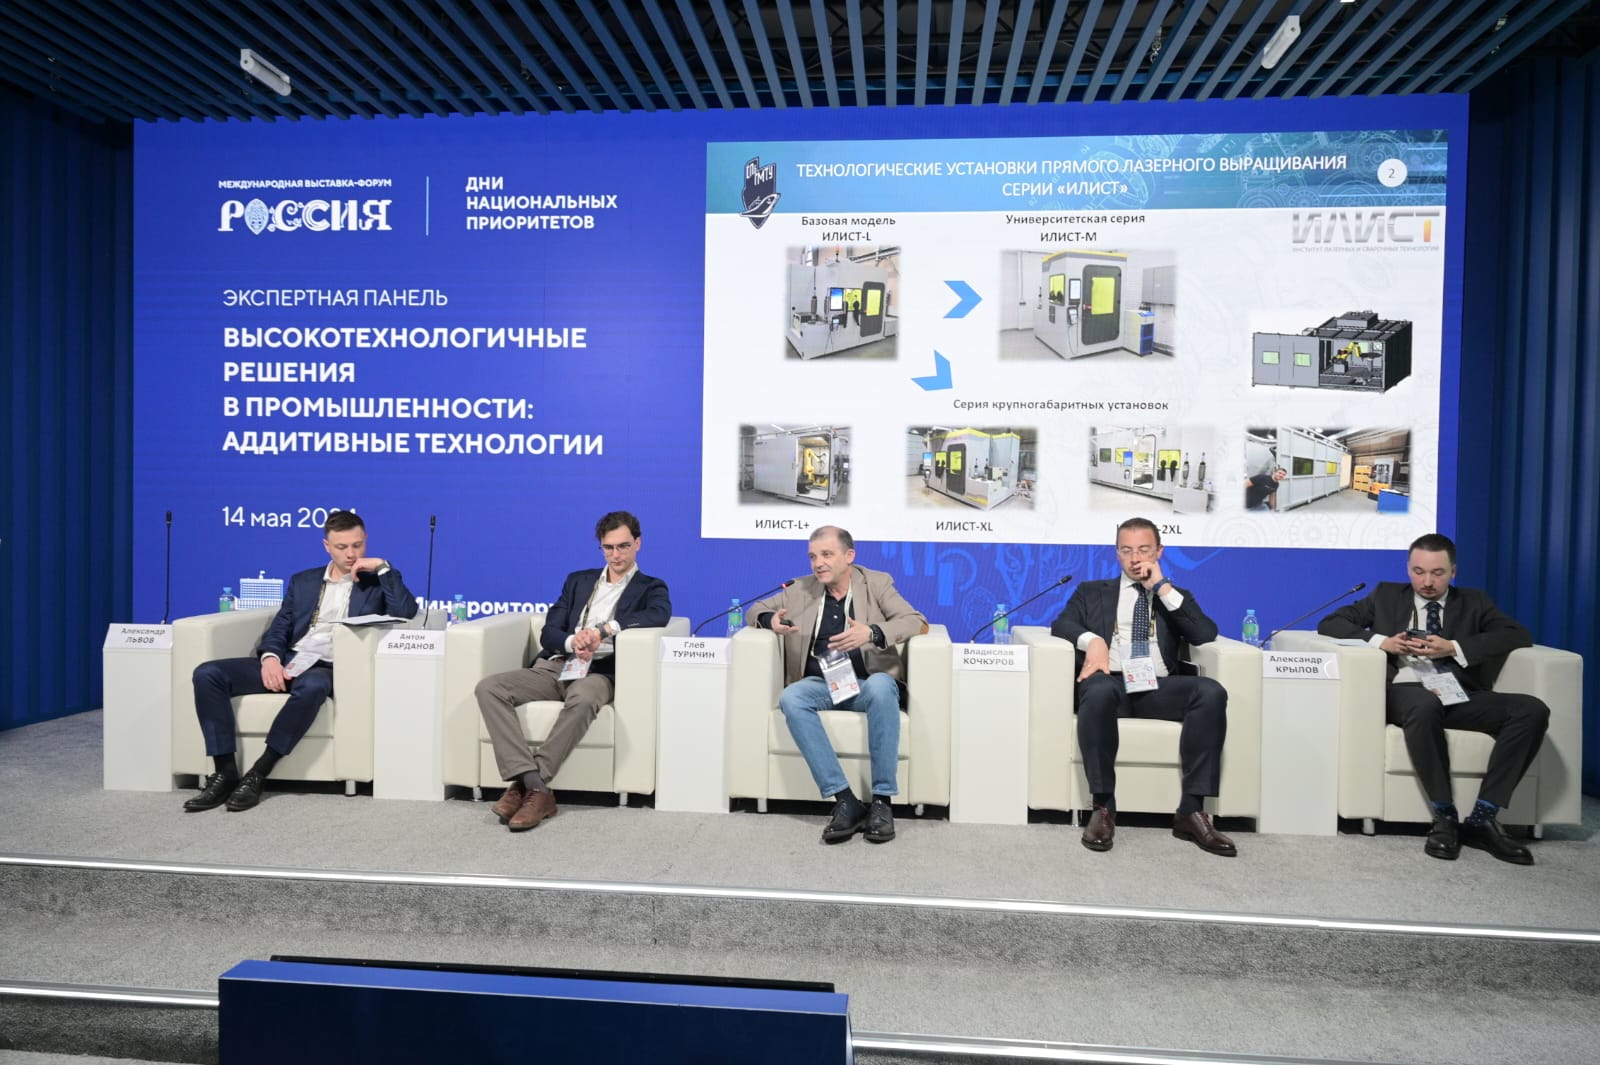 Ассоциация развития аддитивных технологий представлена в деловой программе выставки «Россия» 